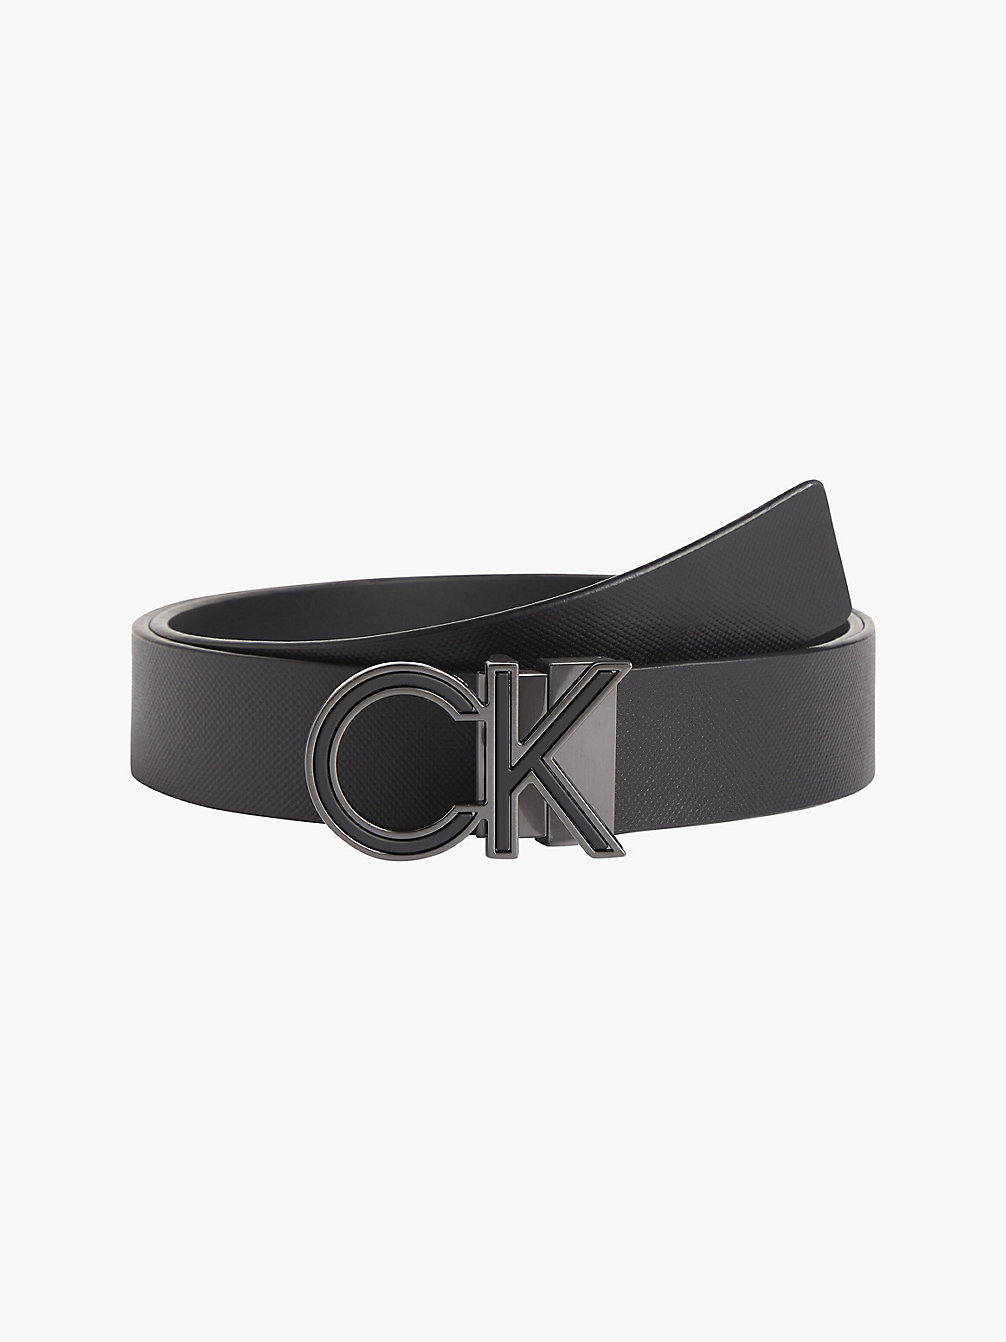 Cintura Double-Face In Pelle Con Logo > BLACK SMOOTH/BLACK TEXTURED > undefined uomo > Calvin Klein